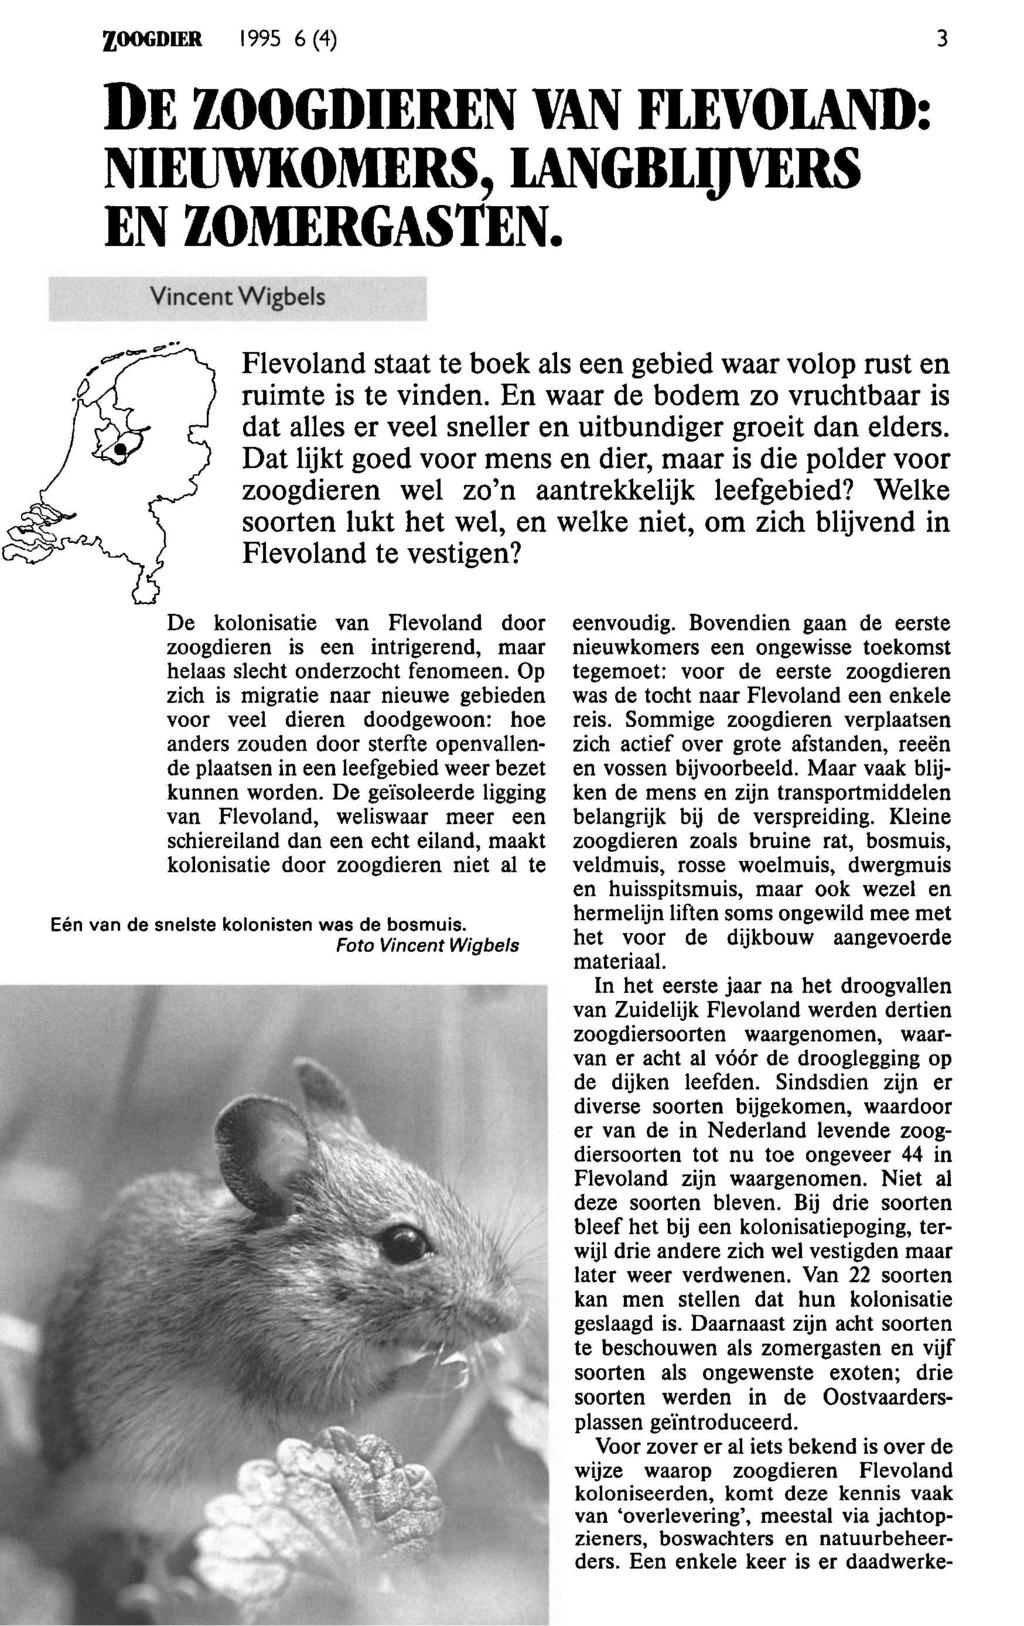 ZOOGDIER 1995 6 (4) 3 De zoogdier Flevoland: nieuwkomers, langblijvers zomergast Vct Wigbels Flevoland staat te boek als e gebied waar volop rust ruimte is te vn.